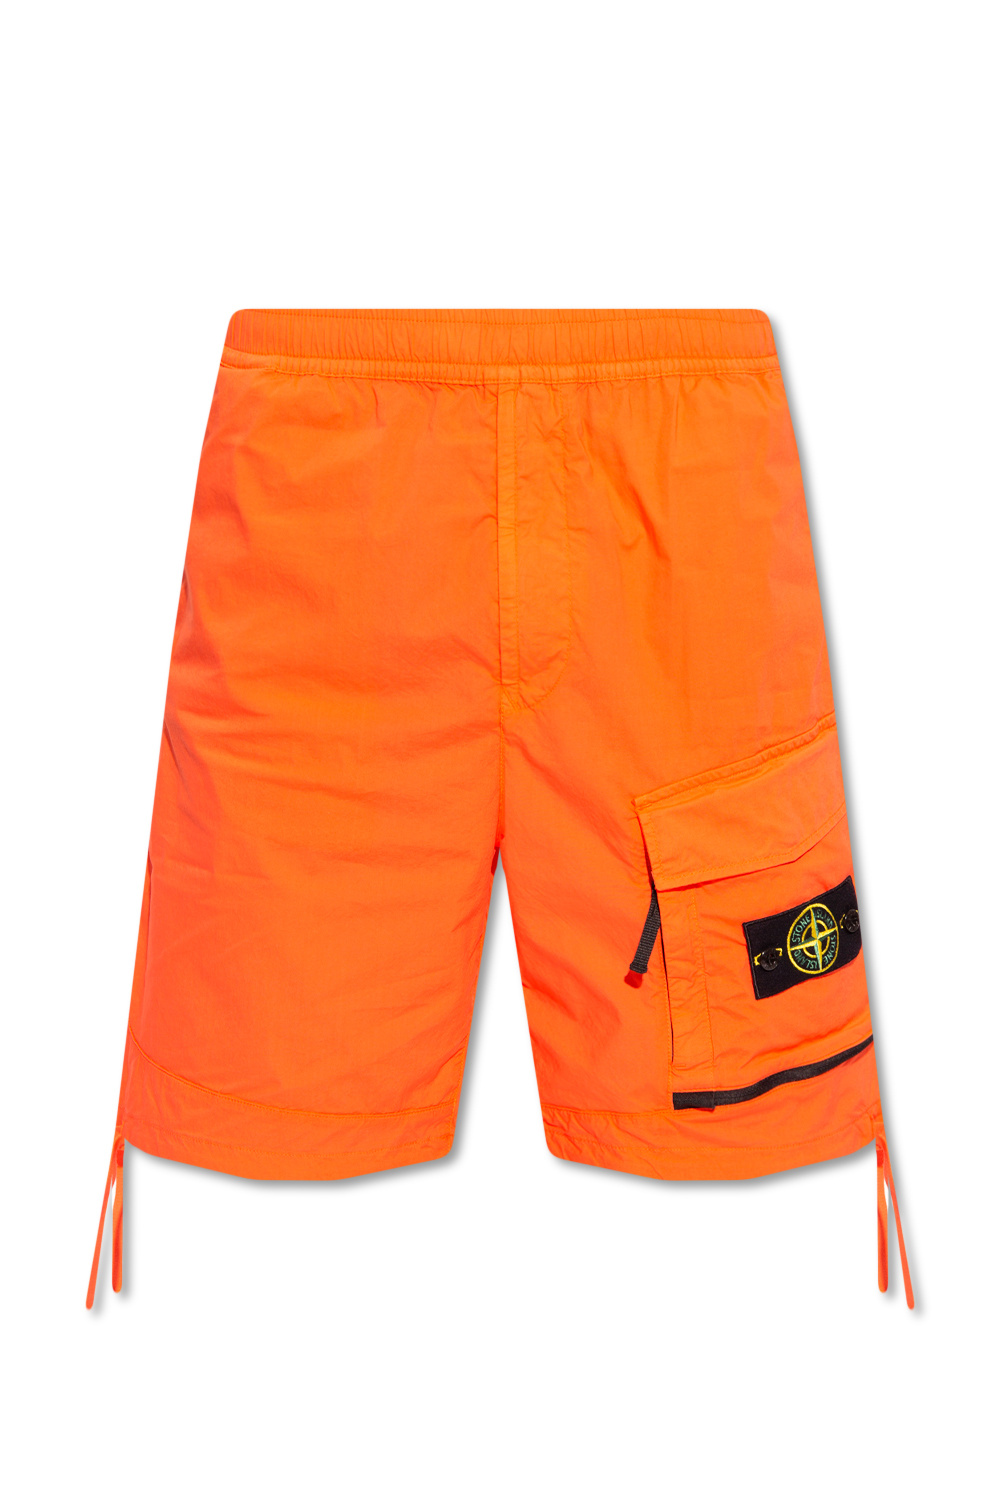 Stone Island Ridge shorts with logo